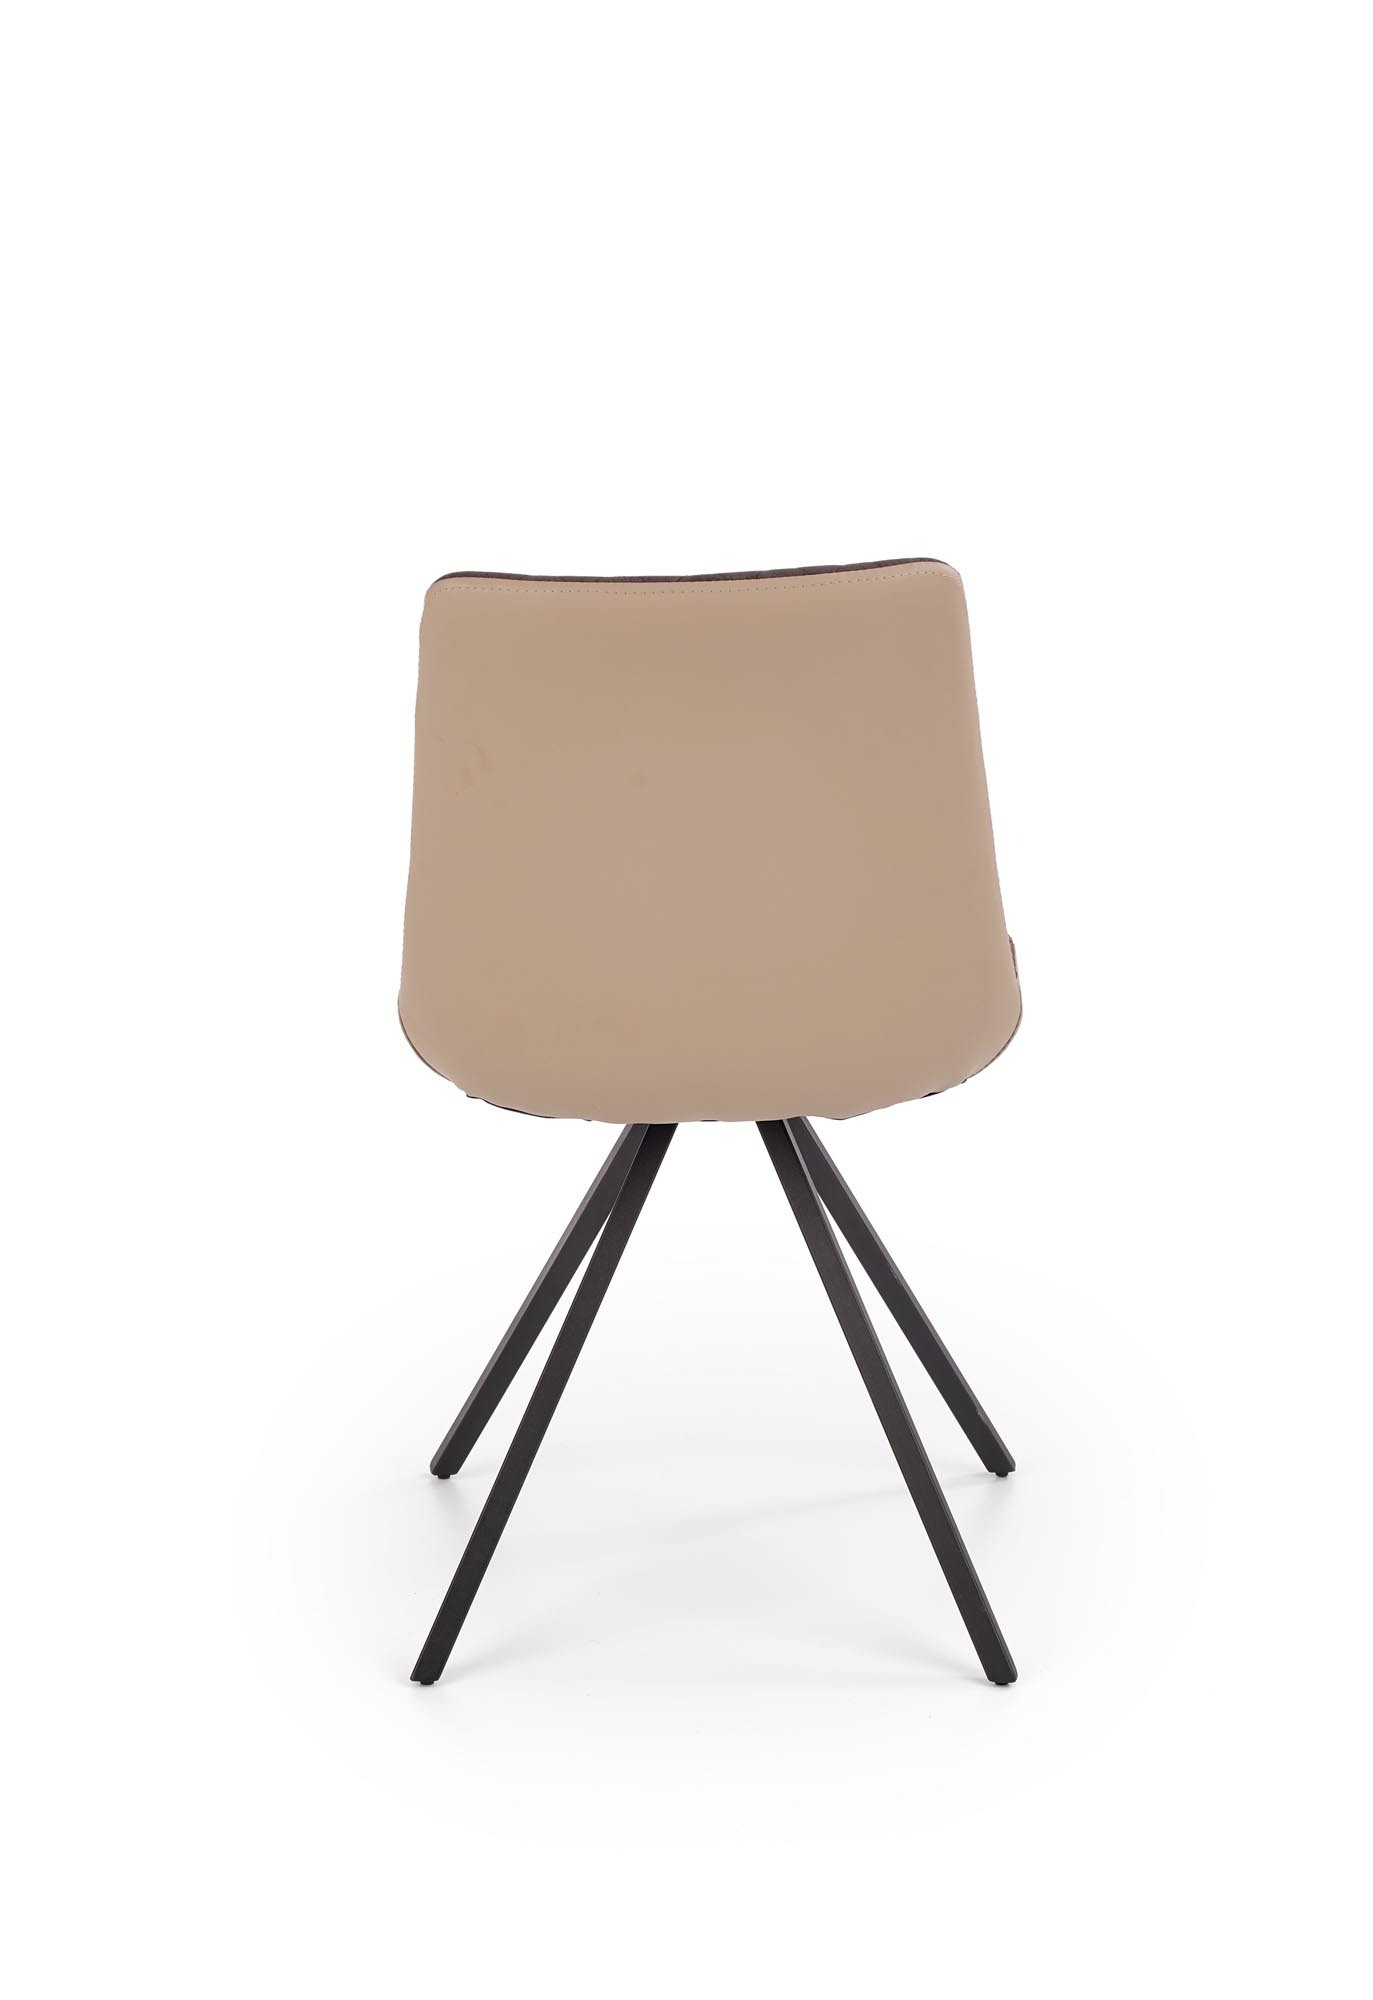 K394 krzesło brązowy / beżowy (2p=4szt)